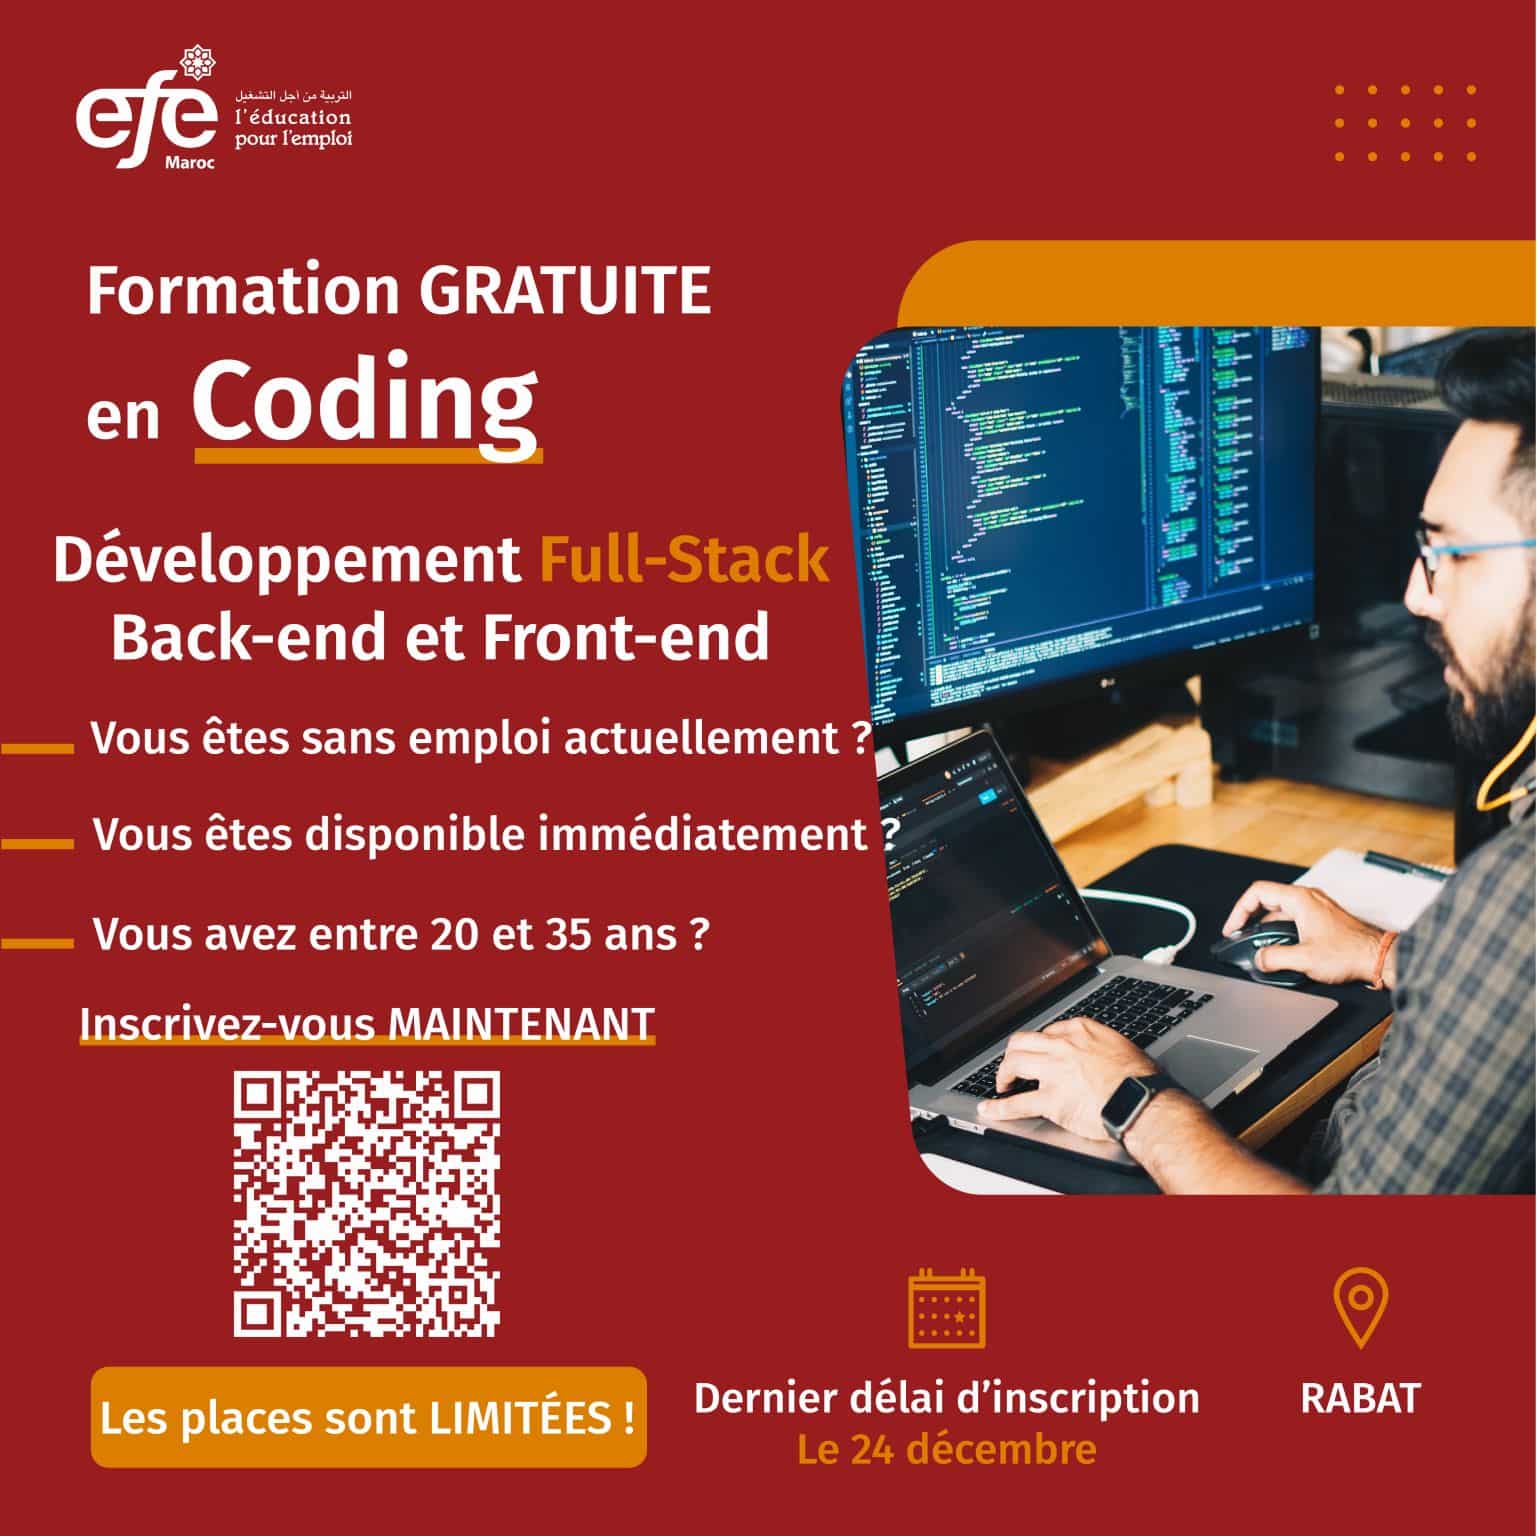 Formation gratuite coding EFE Maroc EFE Maroc propose une formation gratuite en coding